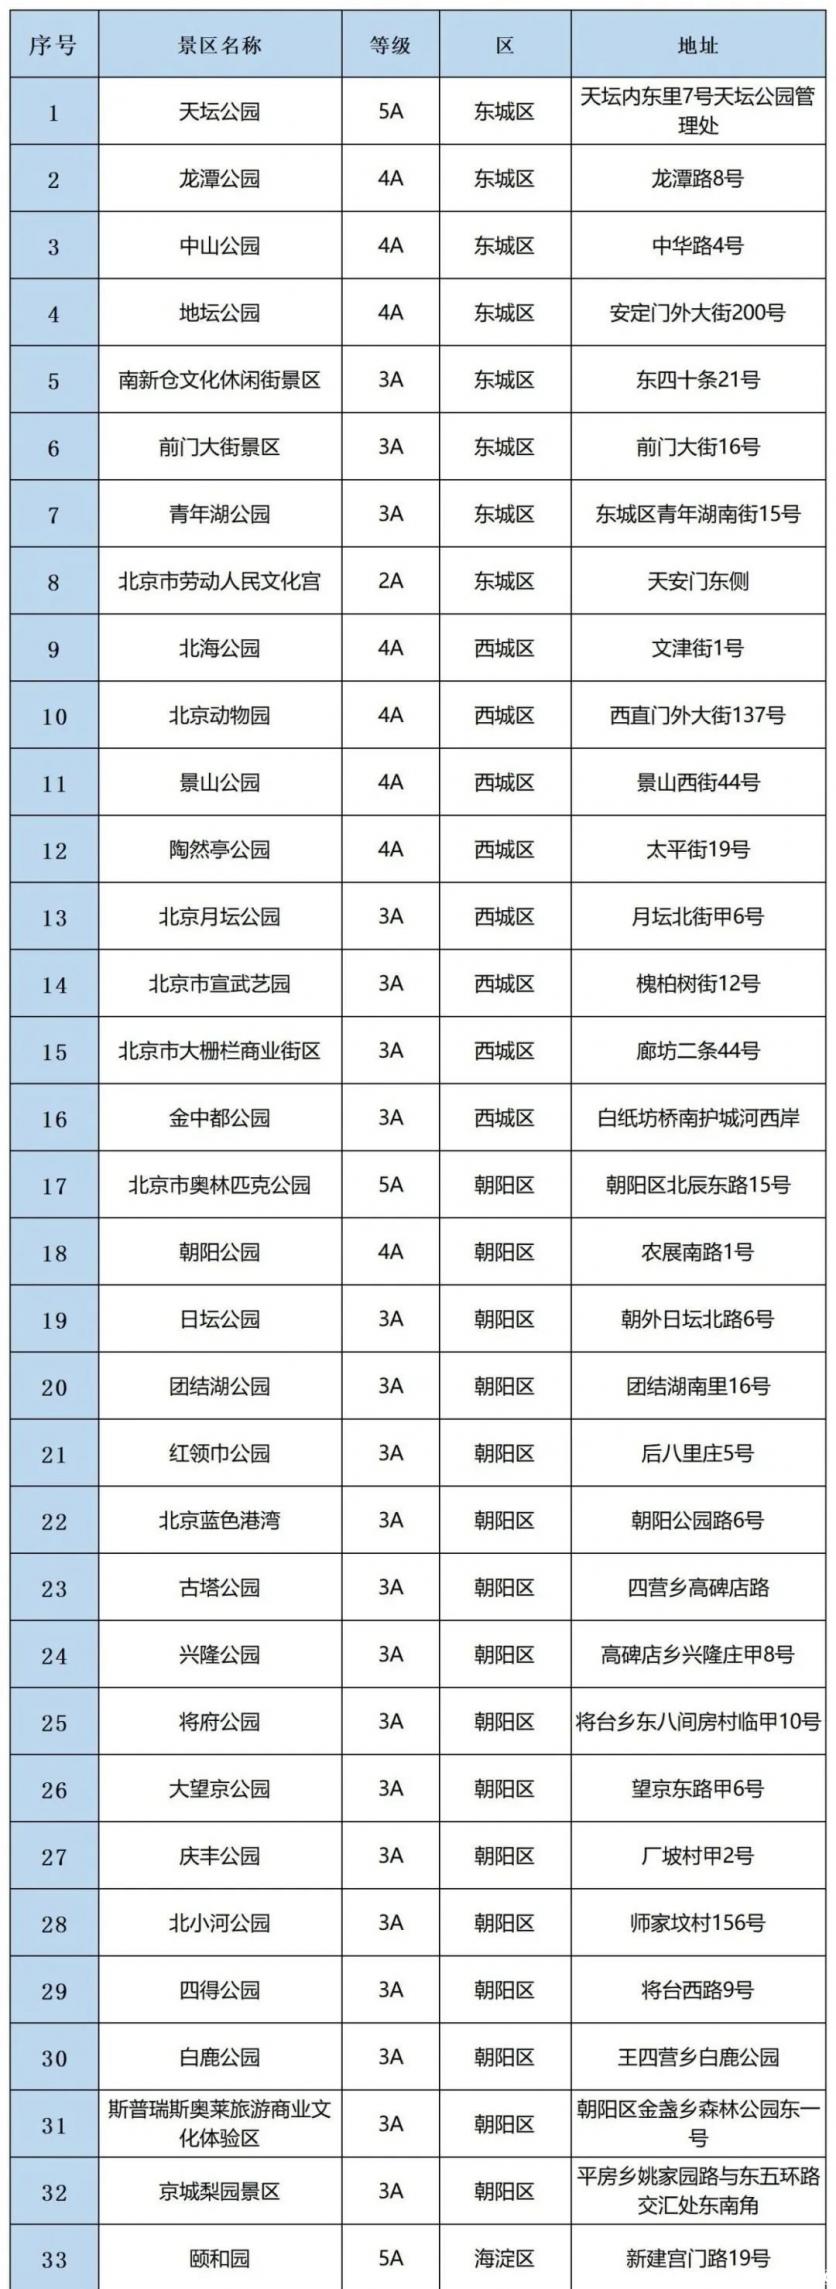 北京恢复市内组团游 开放景区名单2020